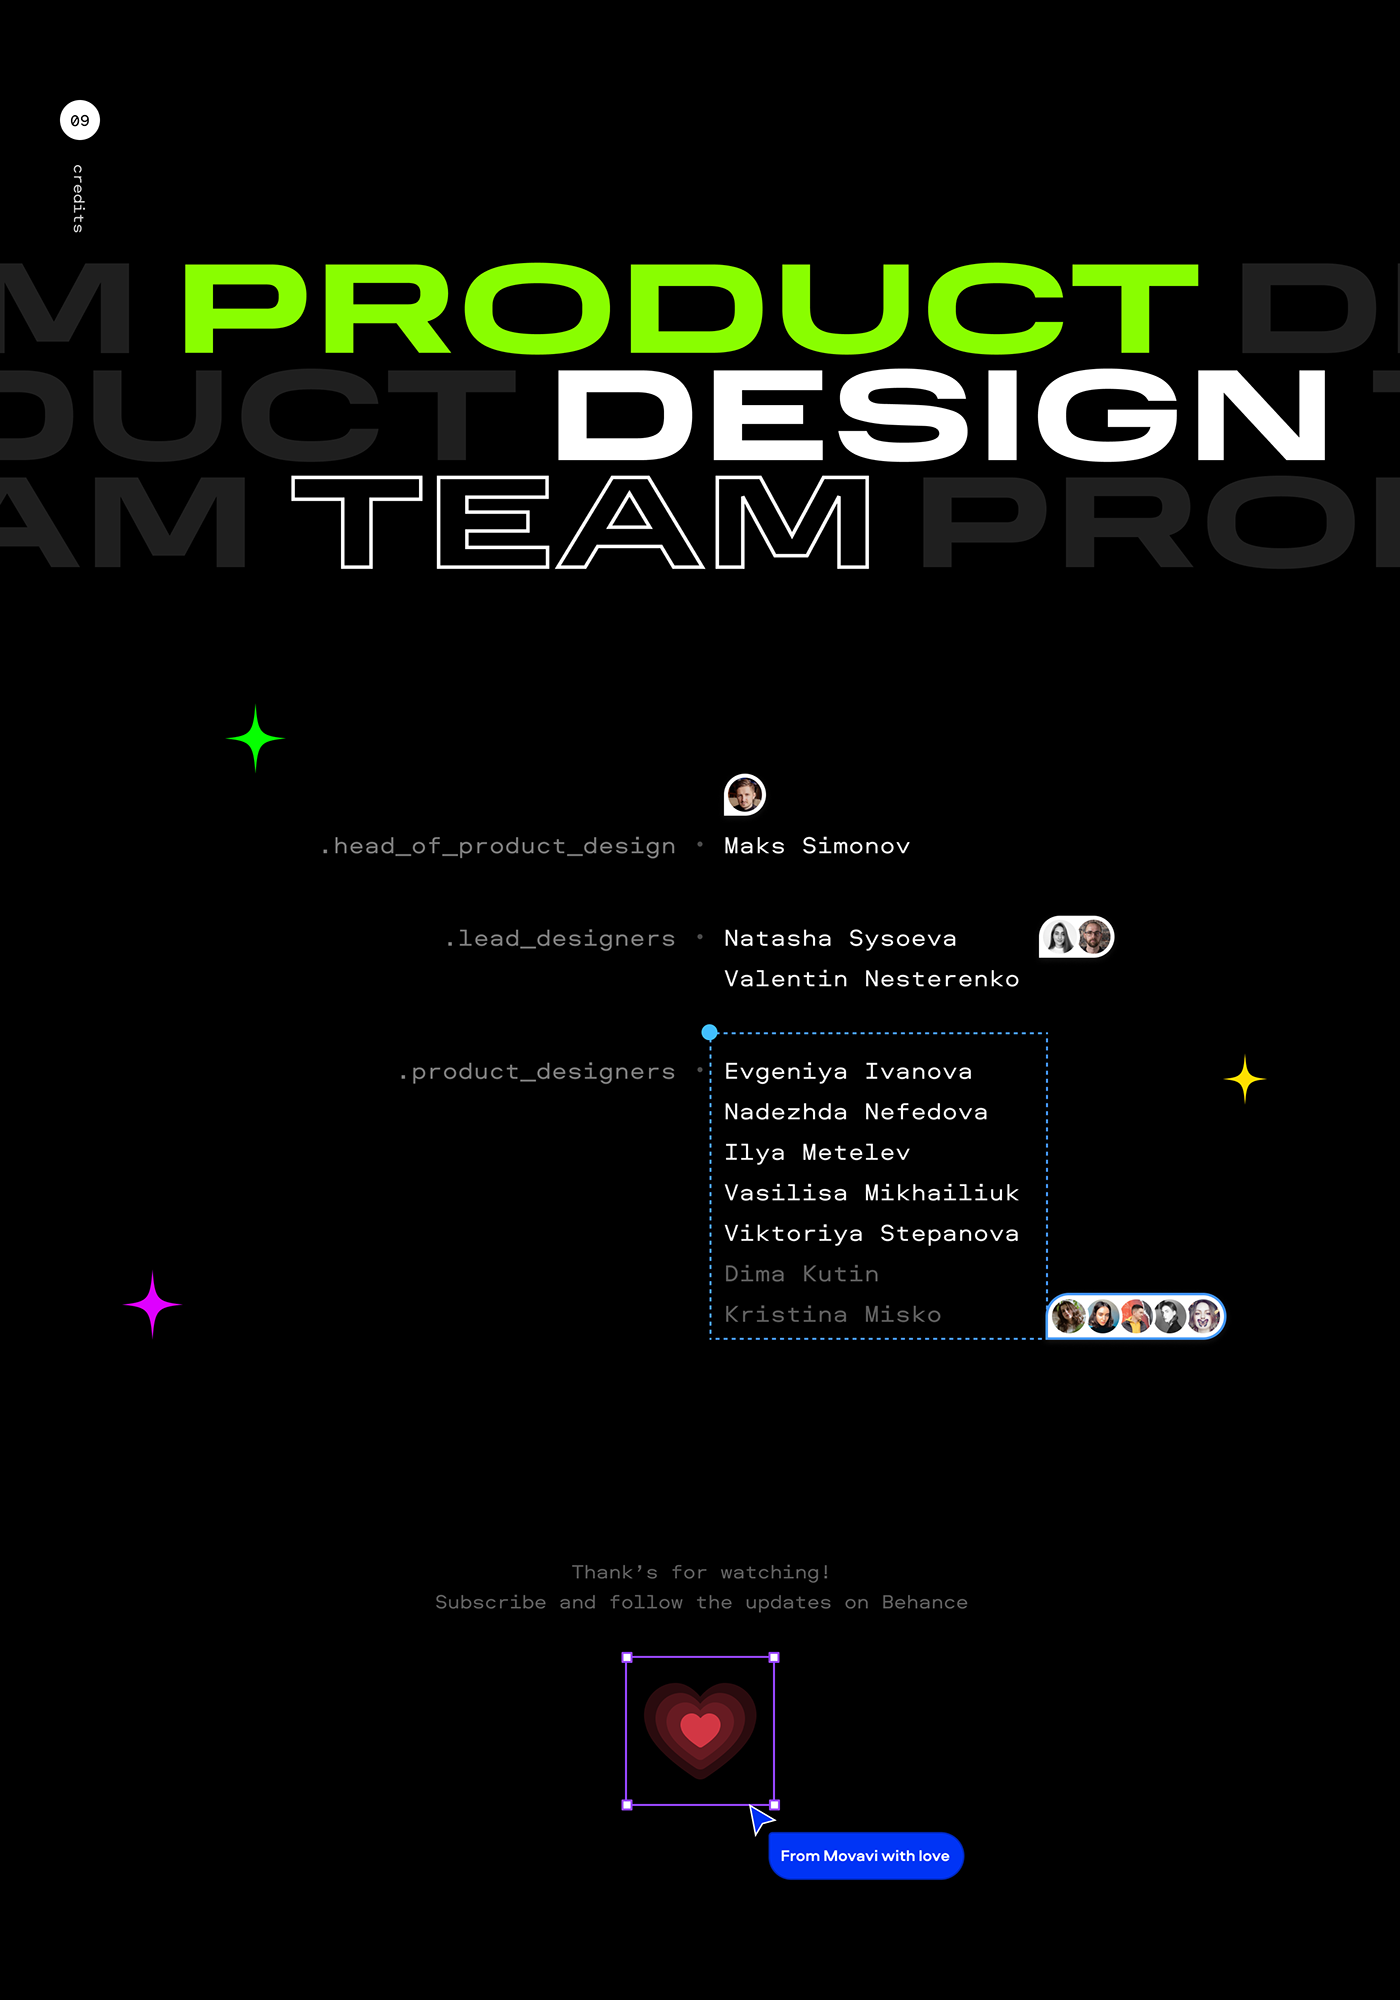 Product design team